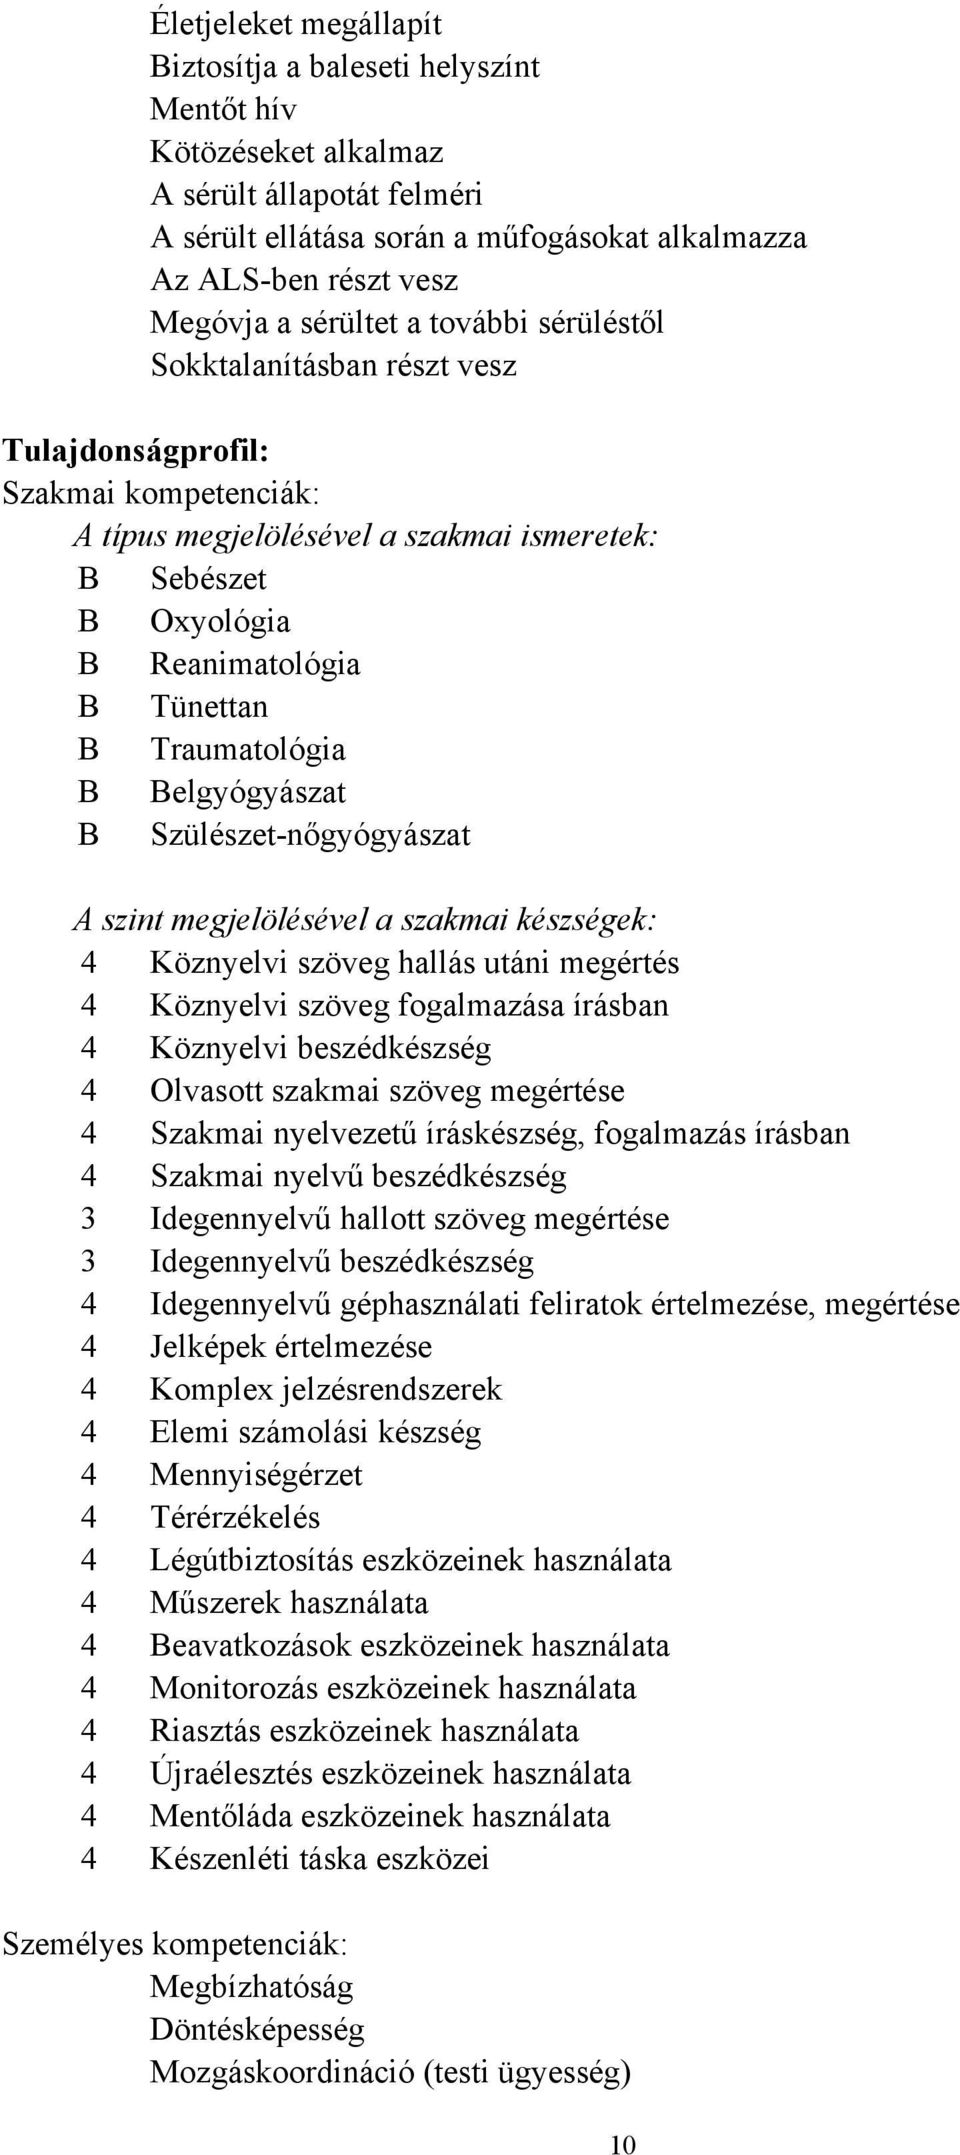 Traumatológia B Belgyógyászat B Szülészet-nőgyógyászat A szint megjelölésével a szakmai készségek: 4 Köznyelvi szöveg hallás utáni megértés 4 Köznyelvi szöveg fogalmazása írásban 4 Köznyelvi